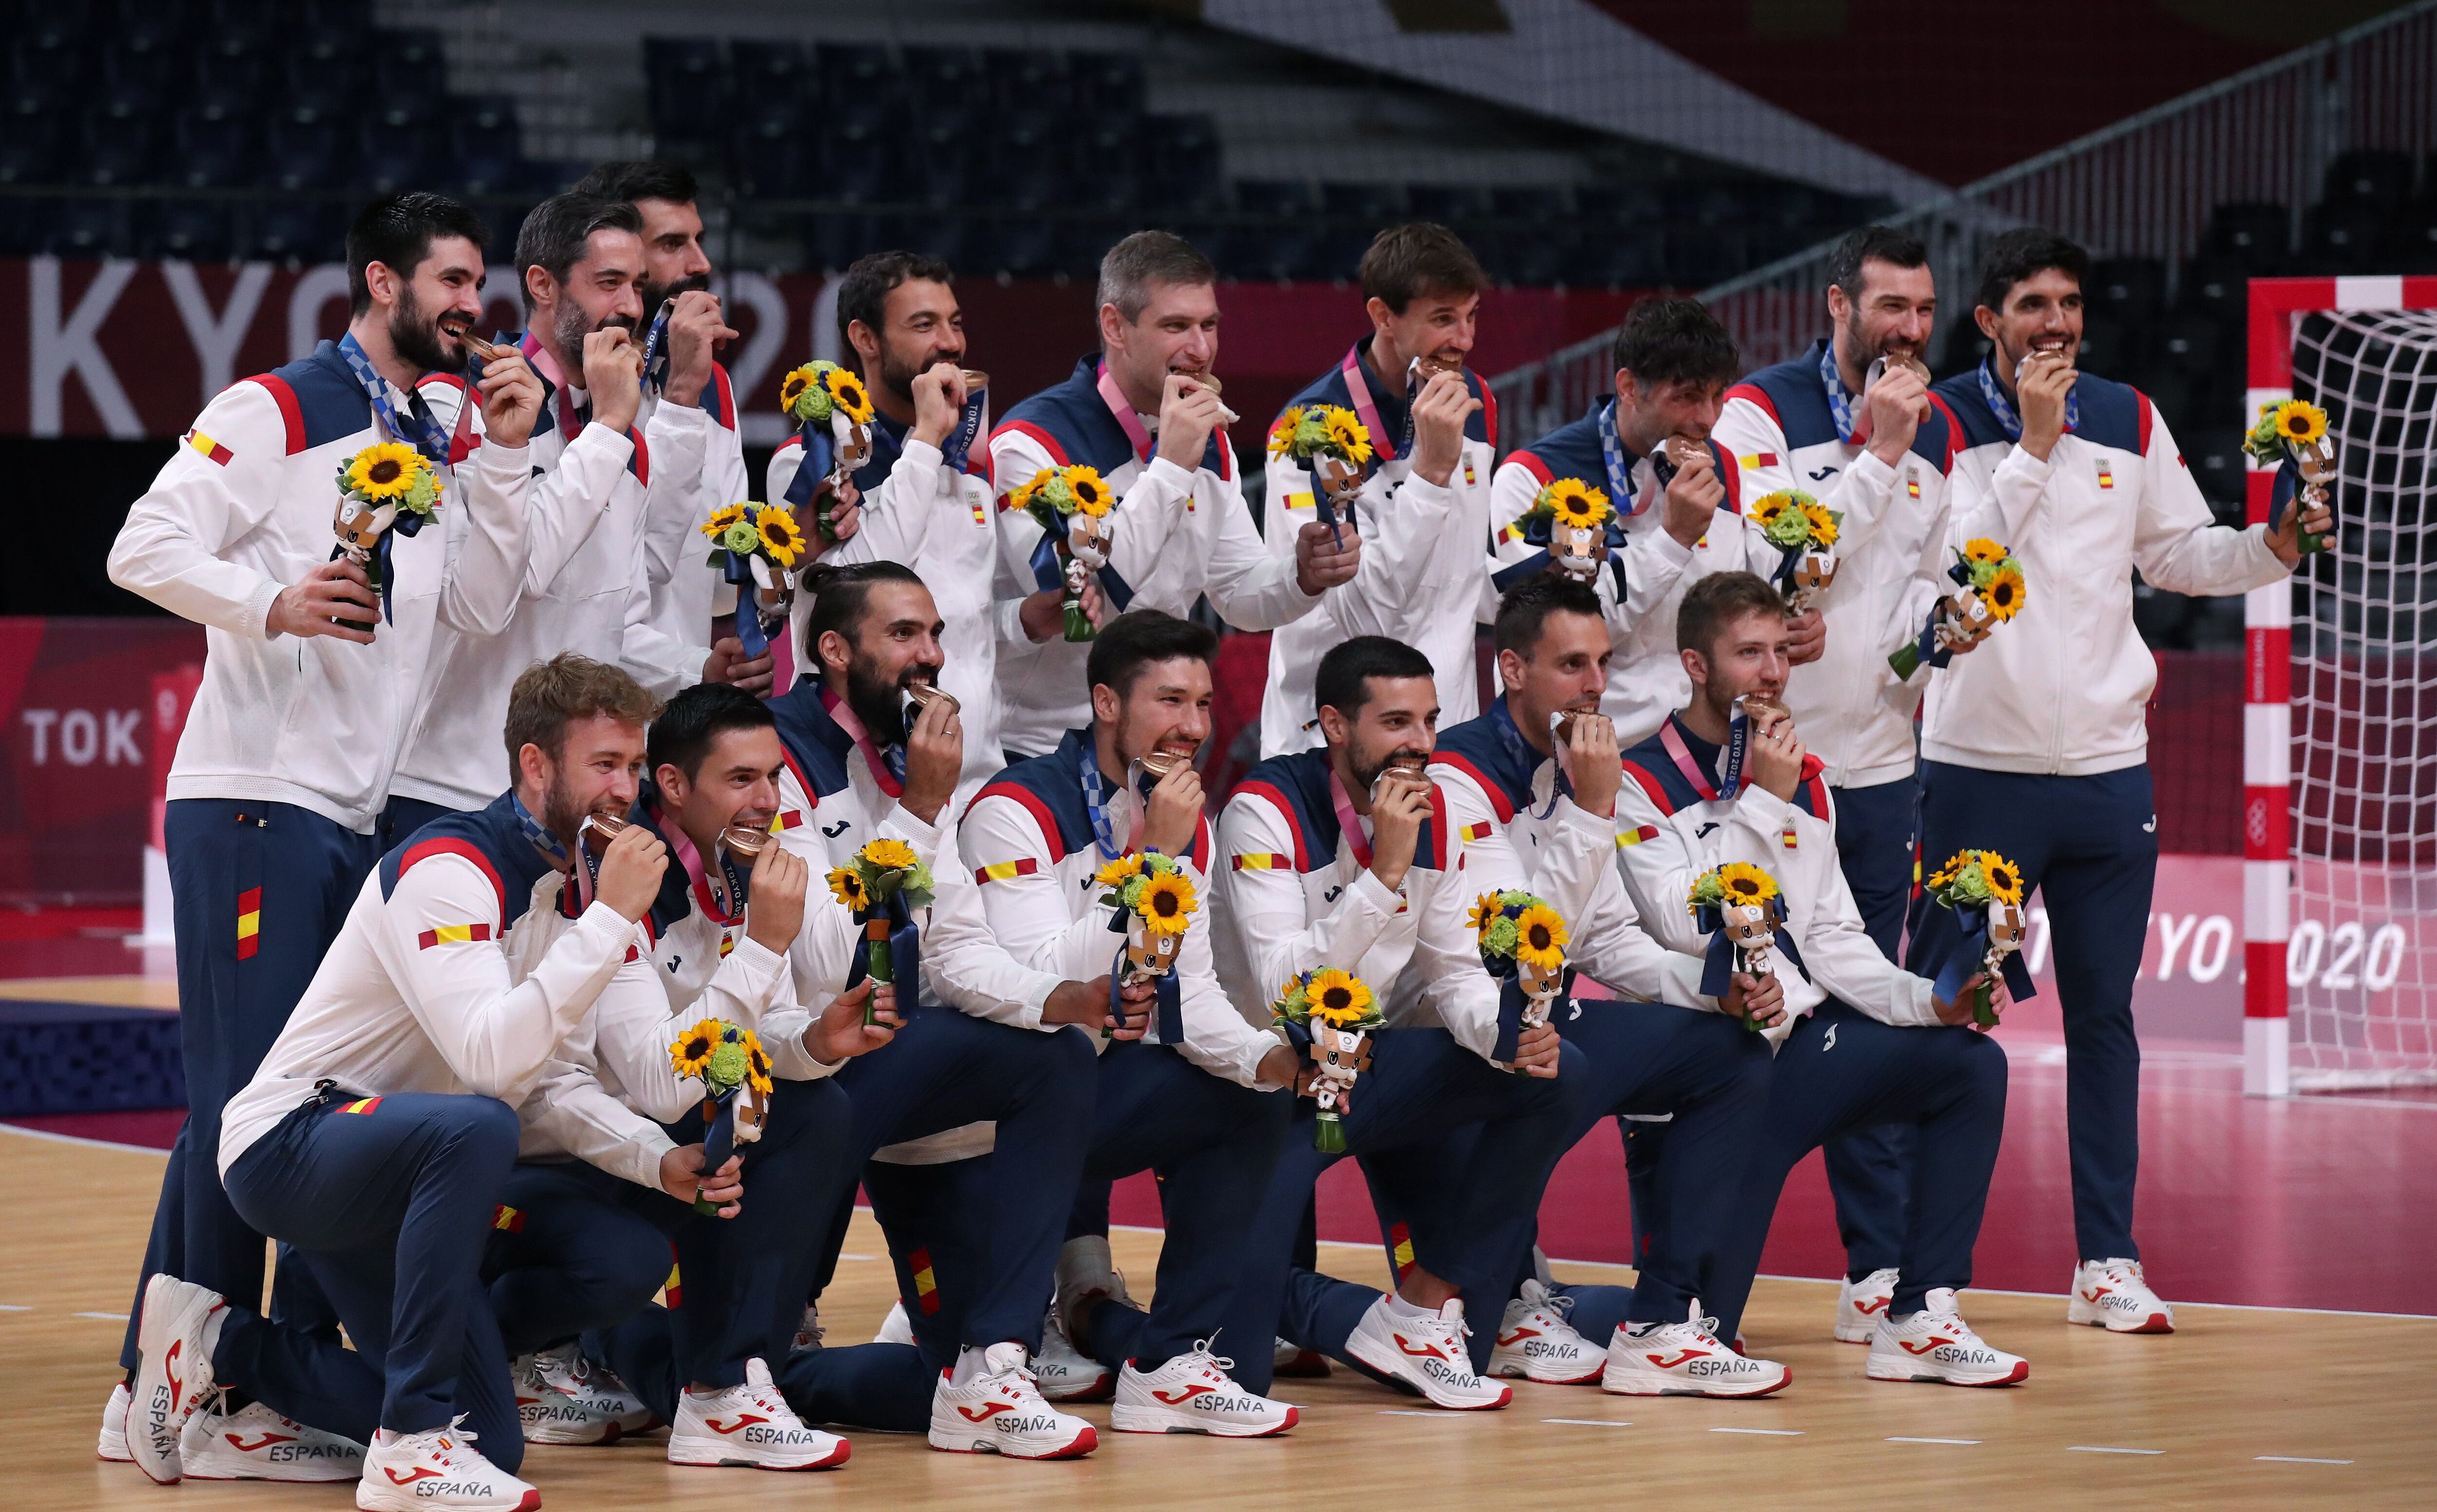 España recibe el bronce en balonmano durante los Juegos Olímpicos de Tokio 2020. EFE/EPA/TATYANA ZENKOVICH